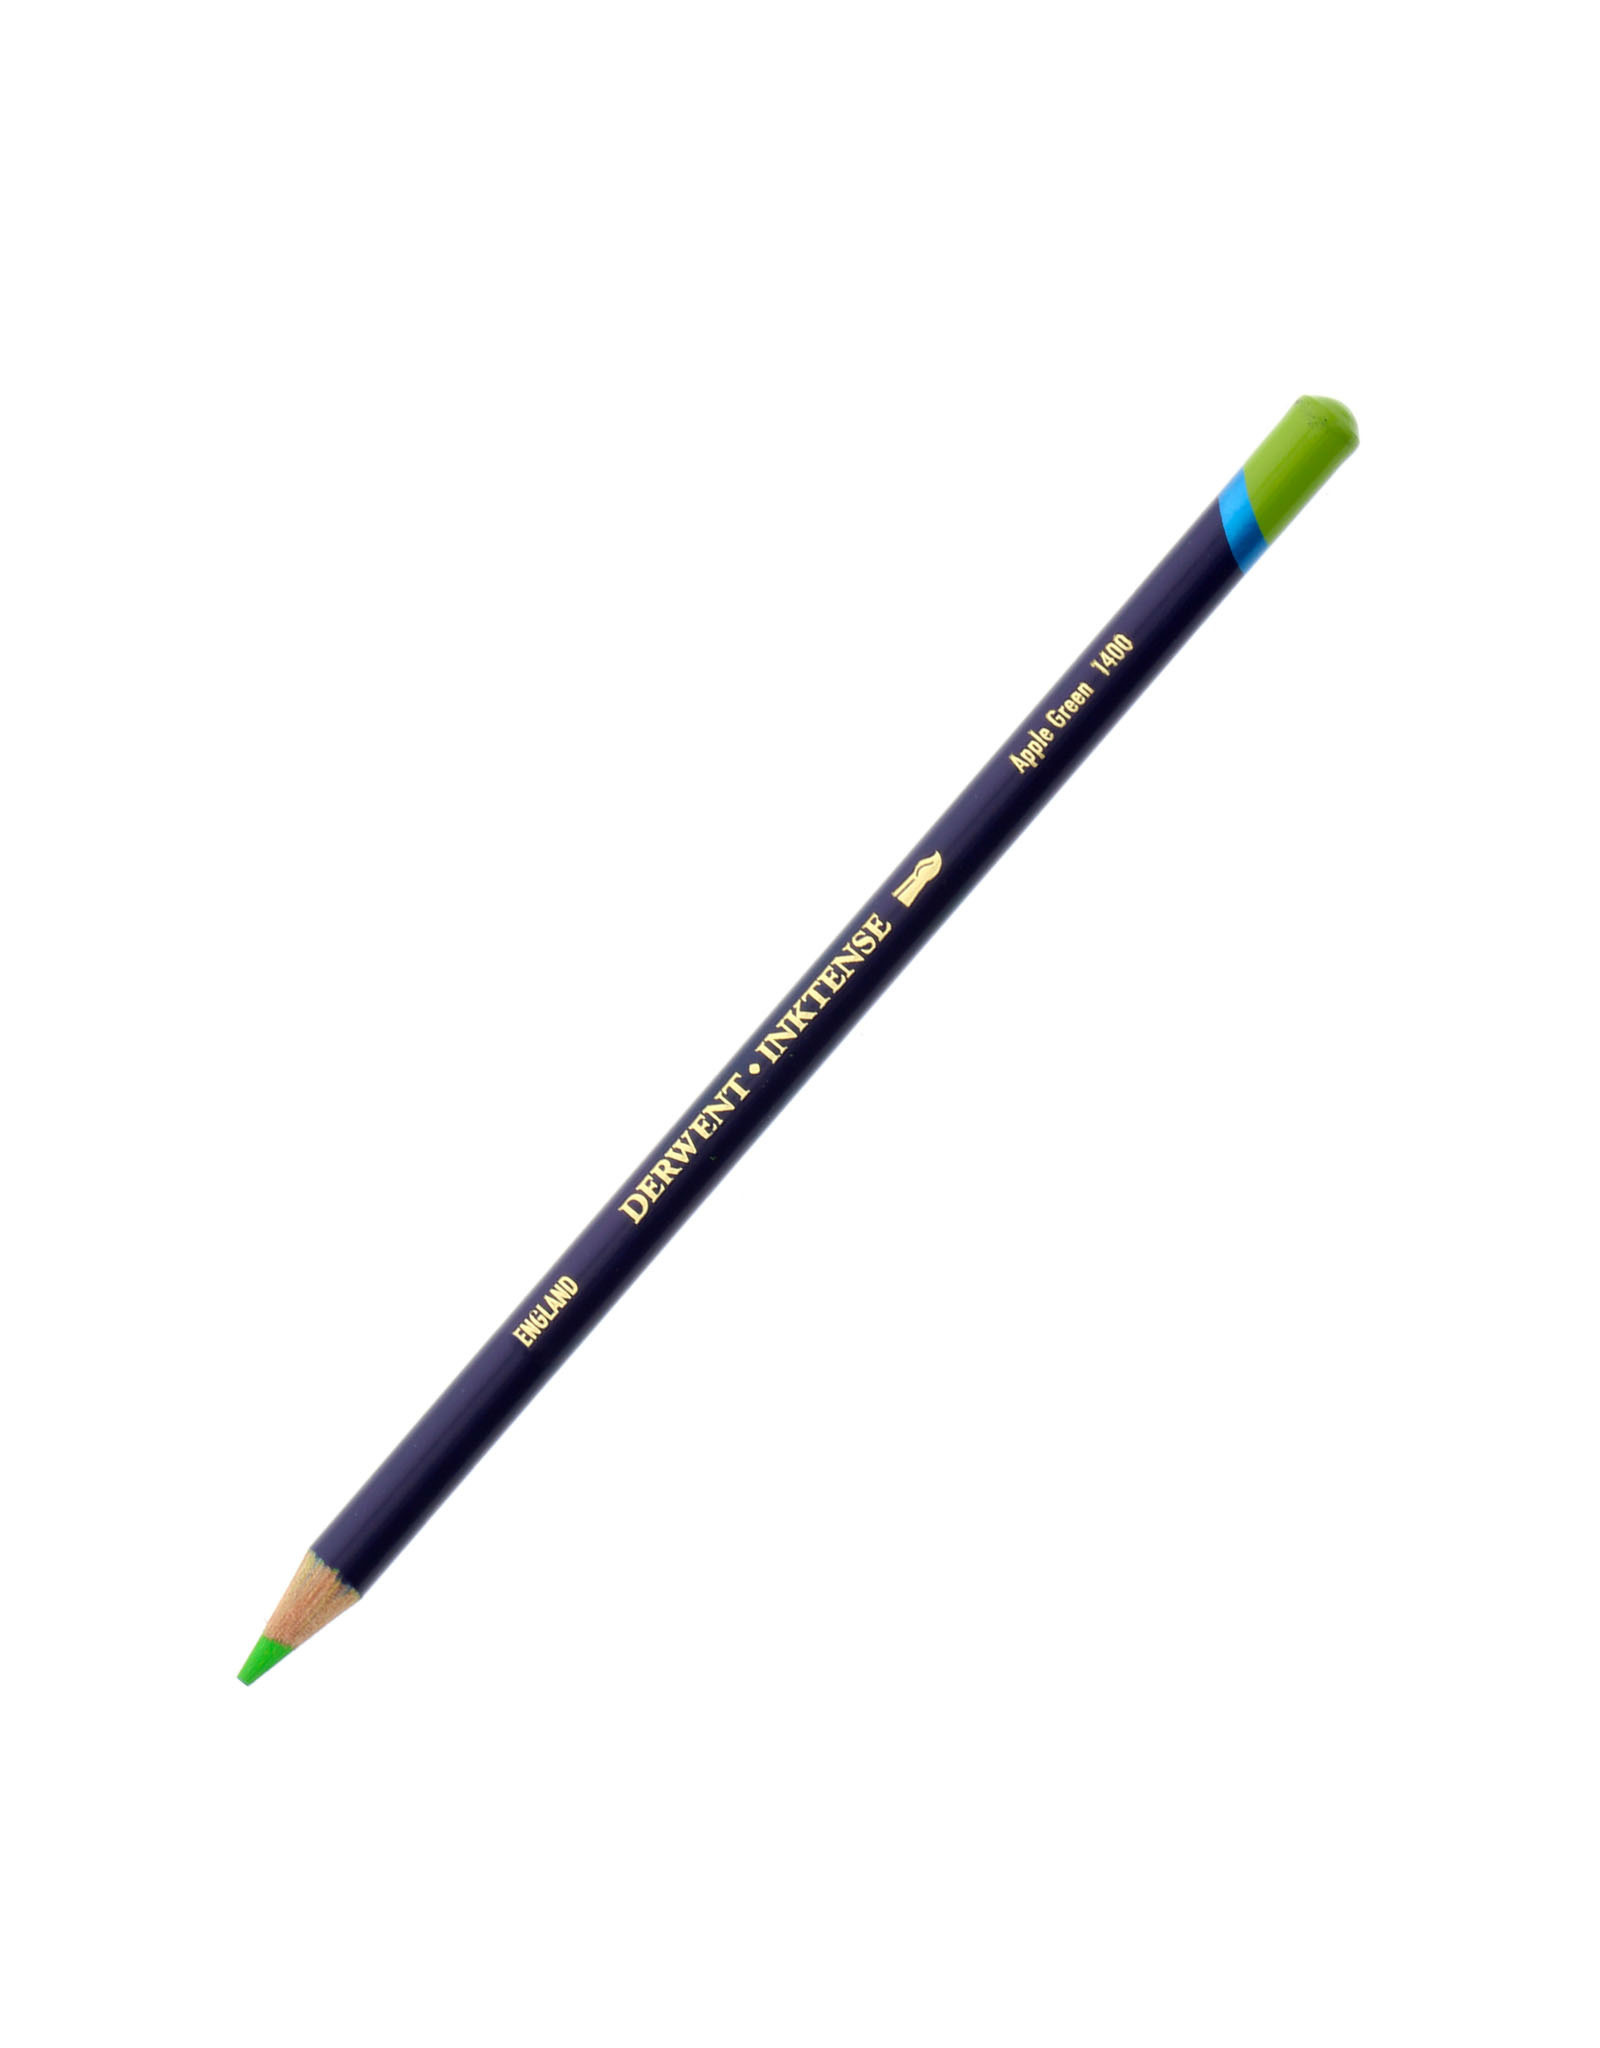 Derwent Derwent Inktense Pencil, Apple Green